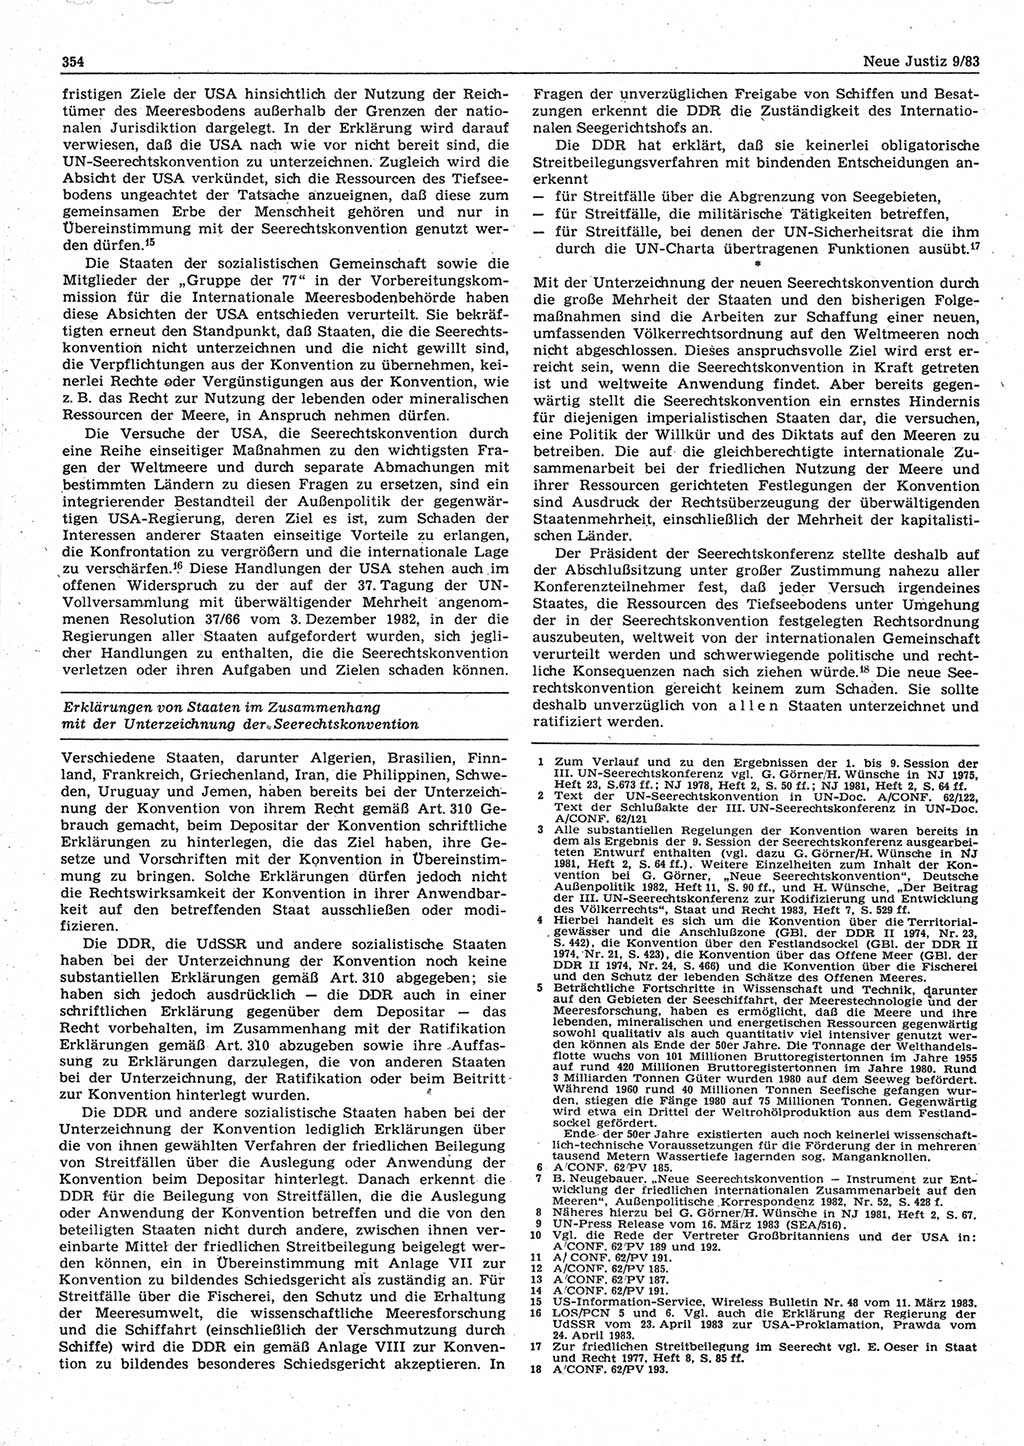 Neue Justiz (NJ), Zeitschrift für sozialistisches Recht und Gesetzlichkeit [Deutsche Demokratische Republik (DDR)], 37. Jahrgang 1983, Seite 354 (NJ DDR 1983, S. 354)